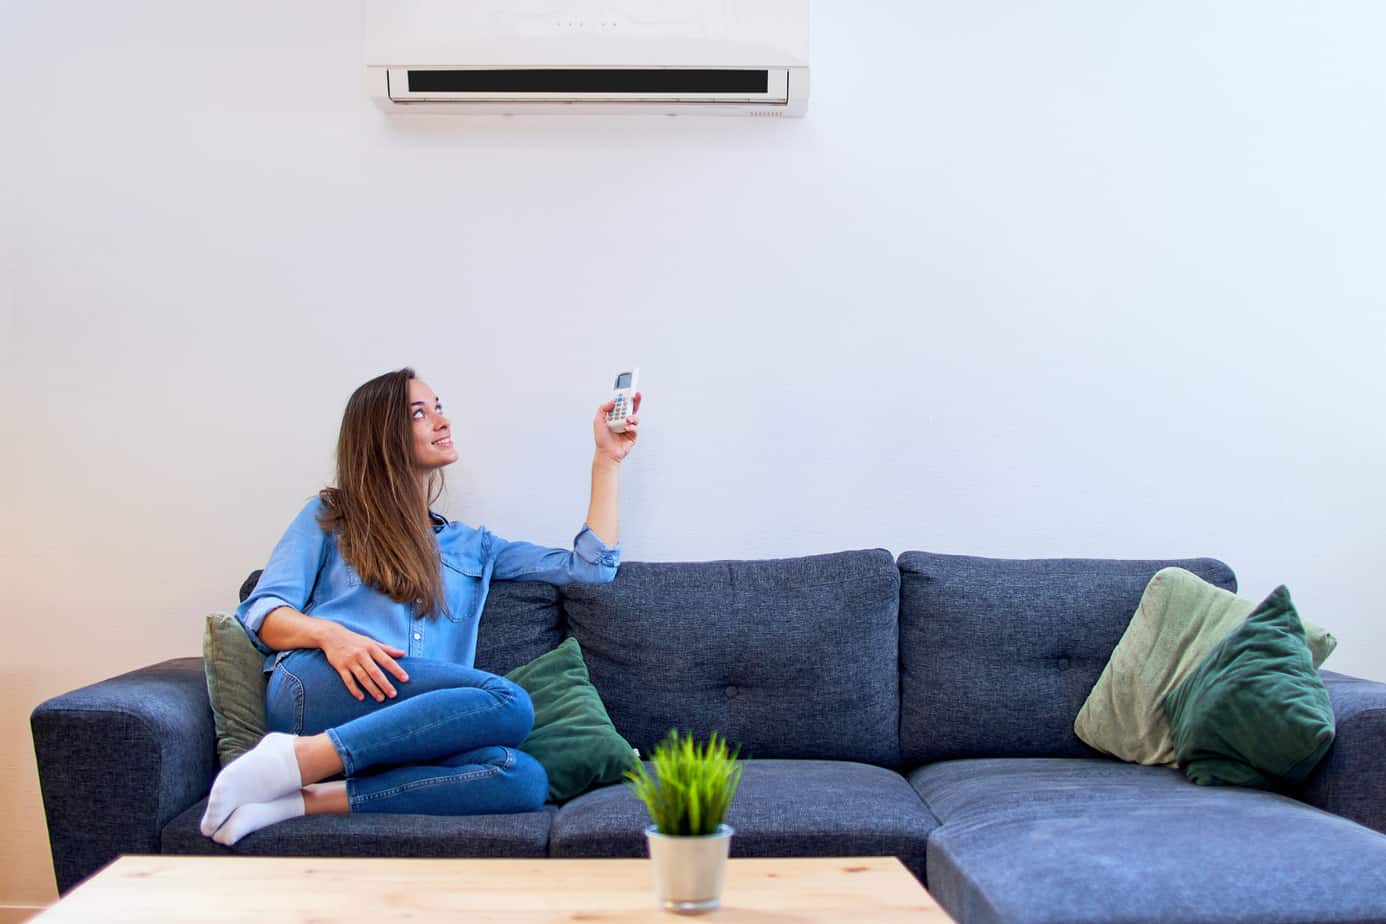 Air conditioner as an air purifier?